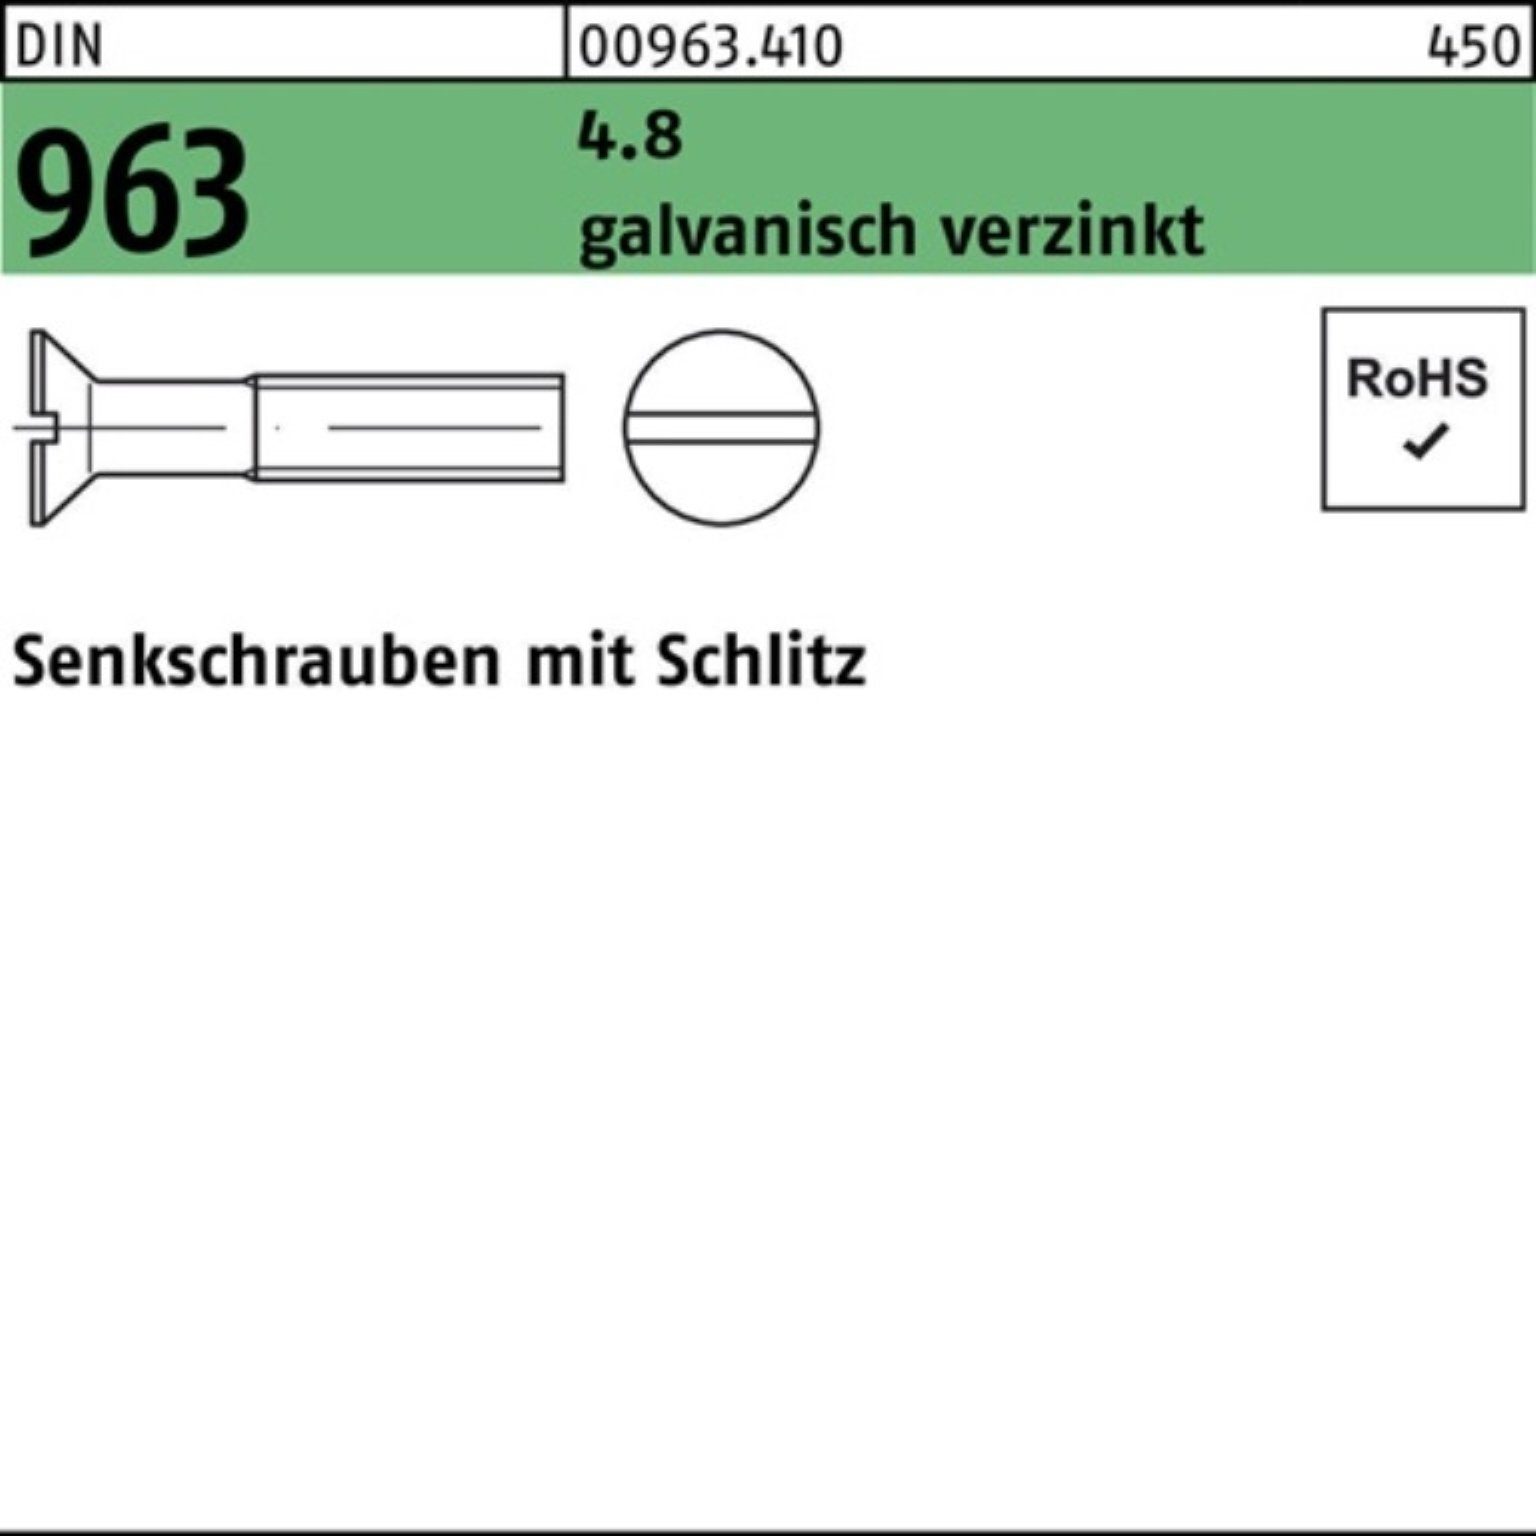 Reyher Senkschraube galv.verz. 4.8 M2x Senkschraube DIN Pack St 963 2000 8 Schlitz 2000er